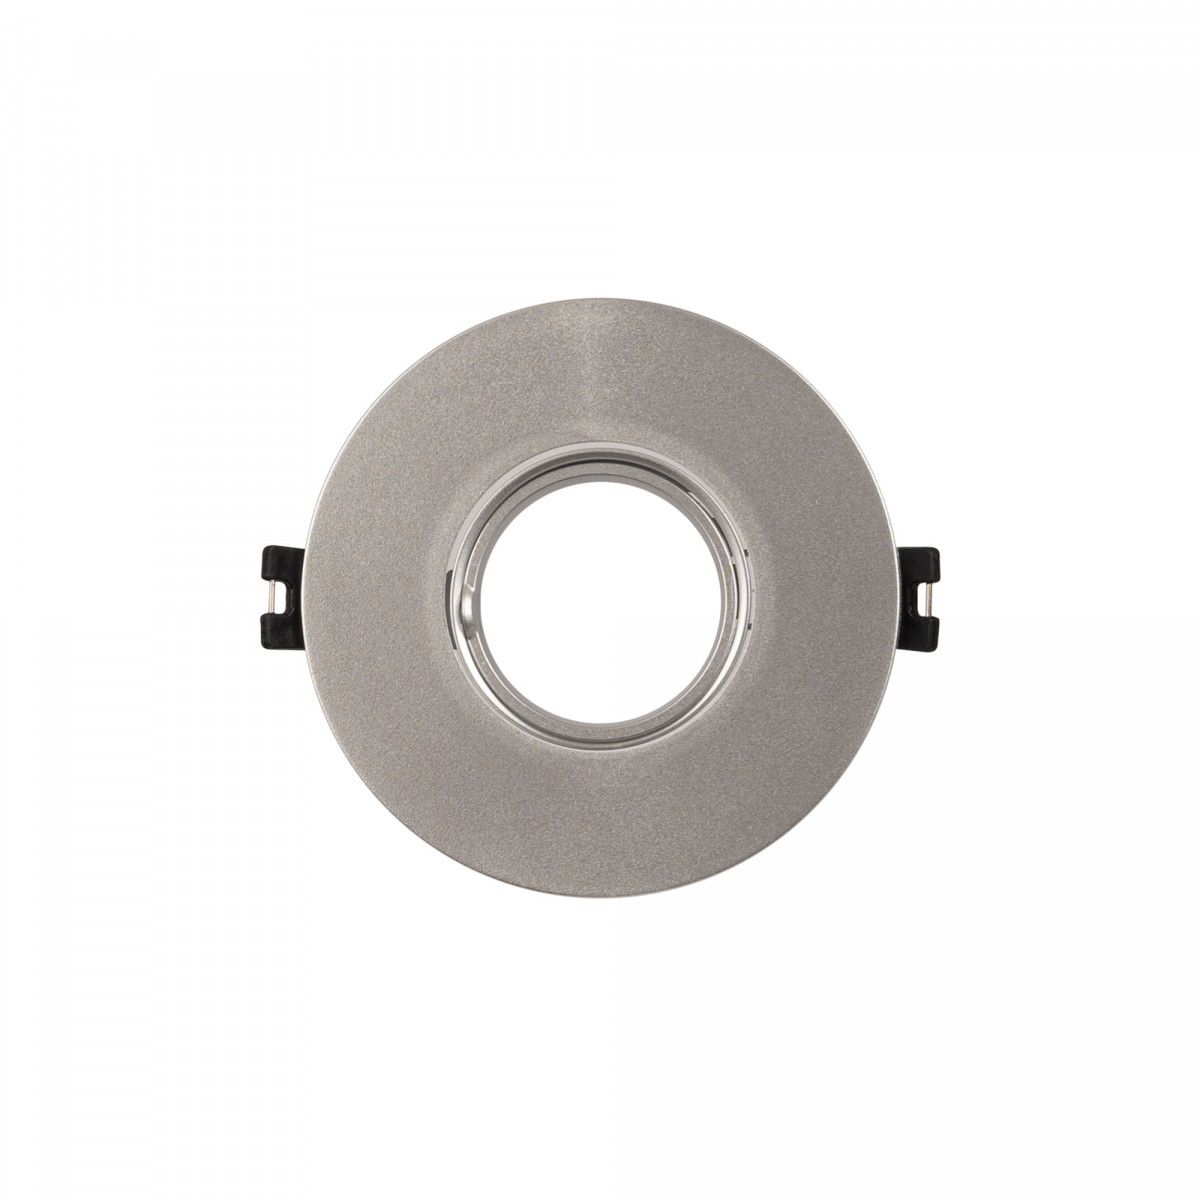 Aro para downlight circular basculante para lâmpada GU10/MR16 - prata